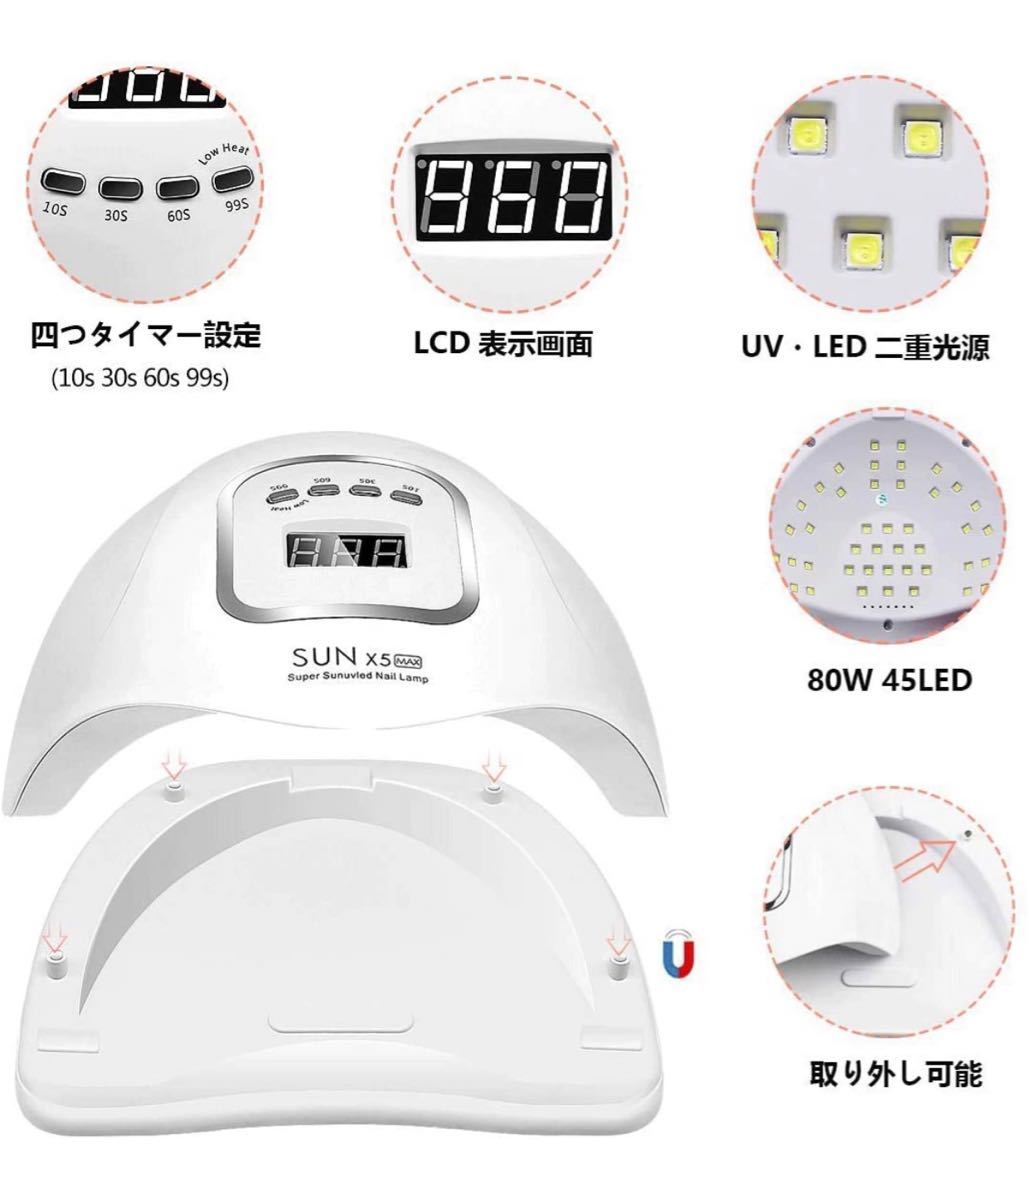 UV LED ネイルドライヤー LEDジェルネイル ライト uvライト 4つタイマー設定 ハイパワー 赤外線検知  手足両用 